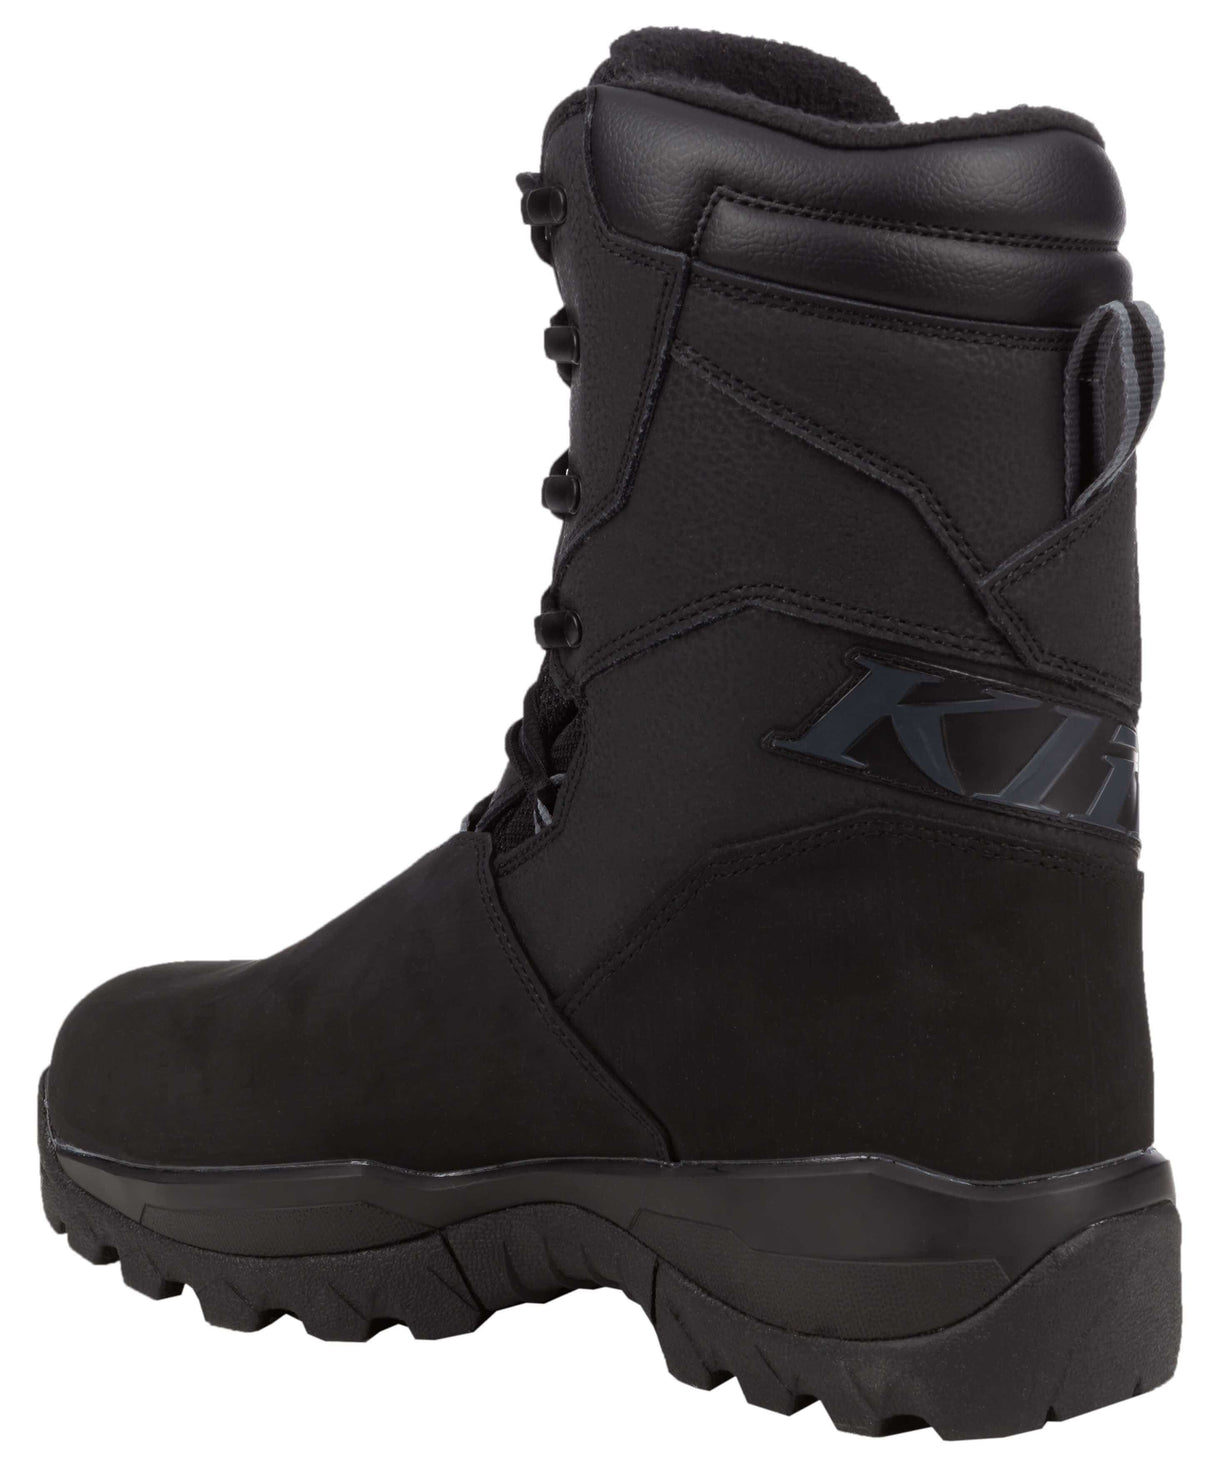 Klim Adrenaline GTX Boot - Black